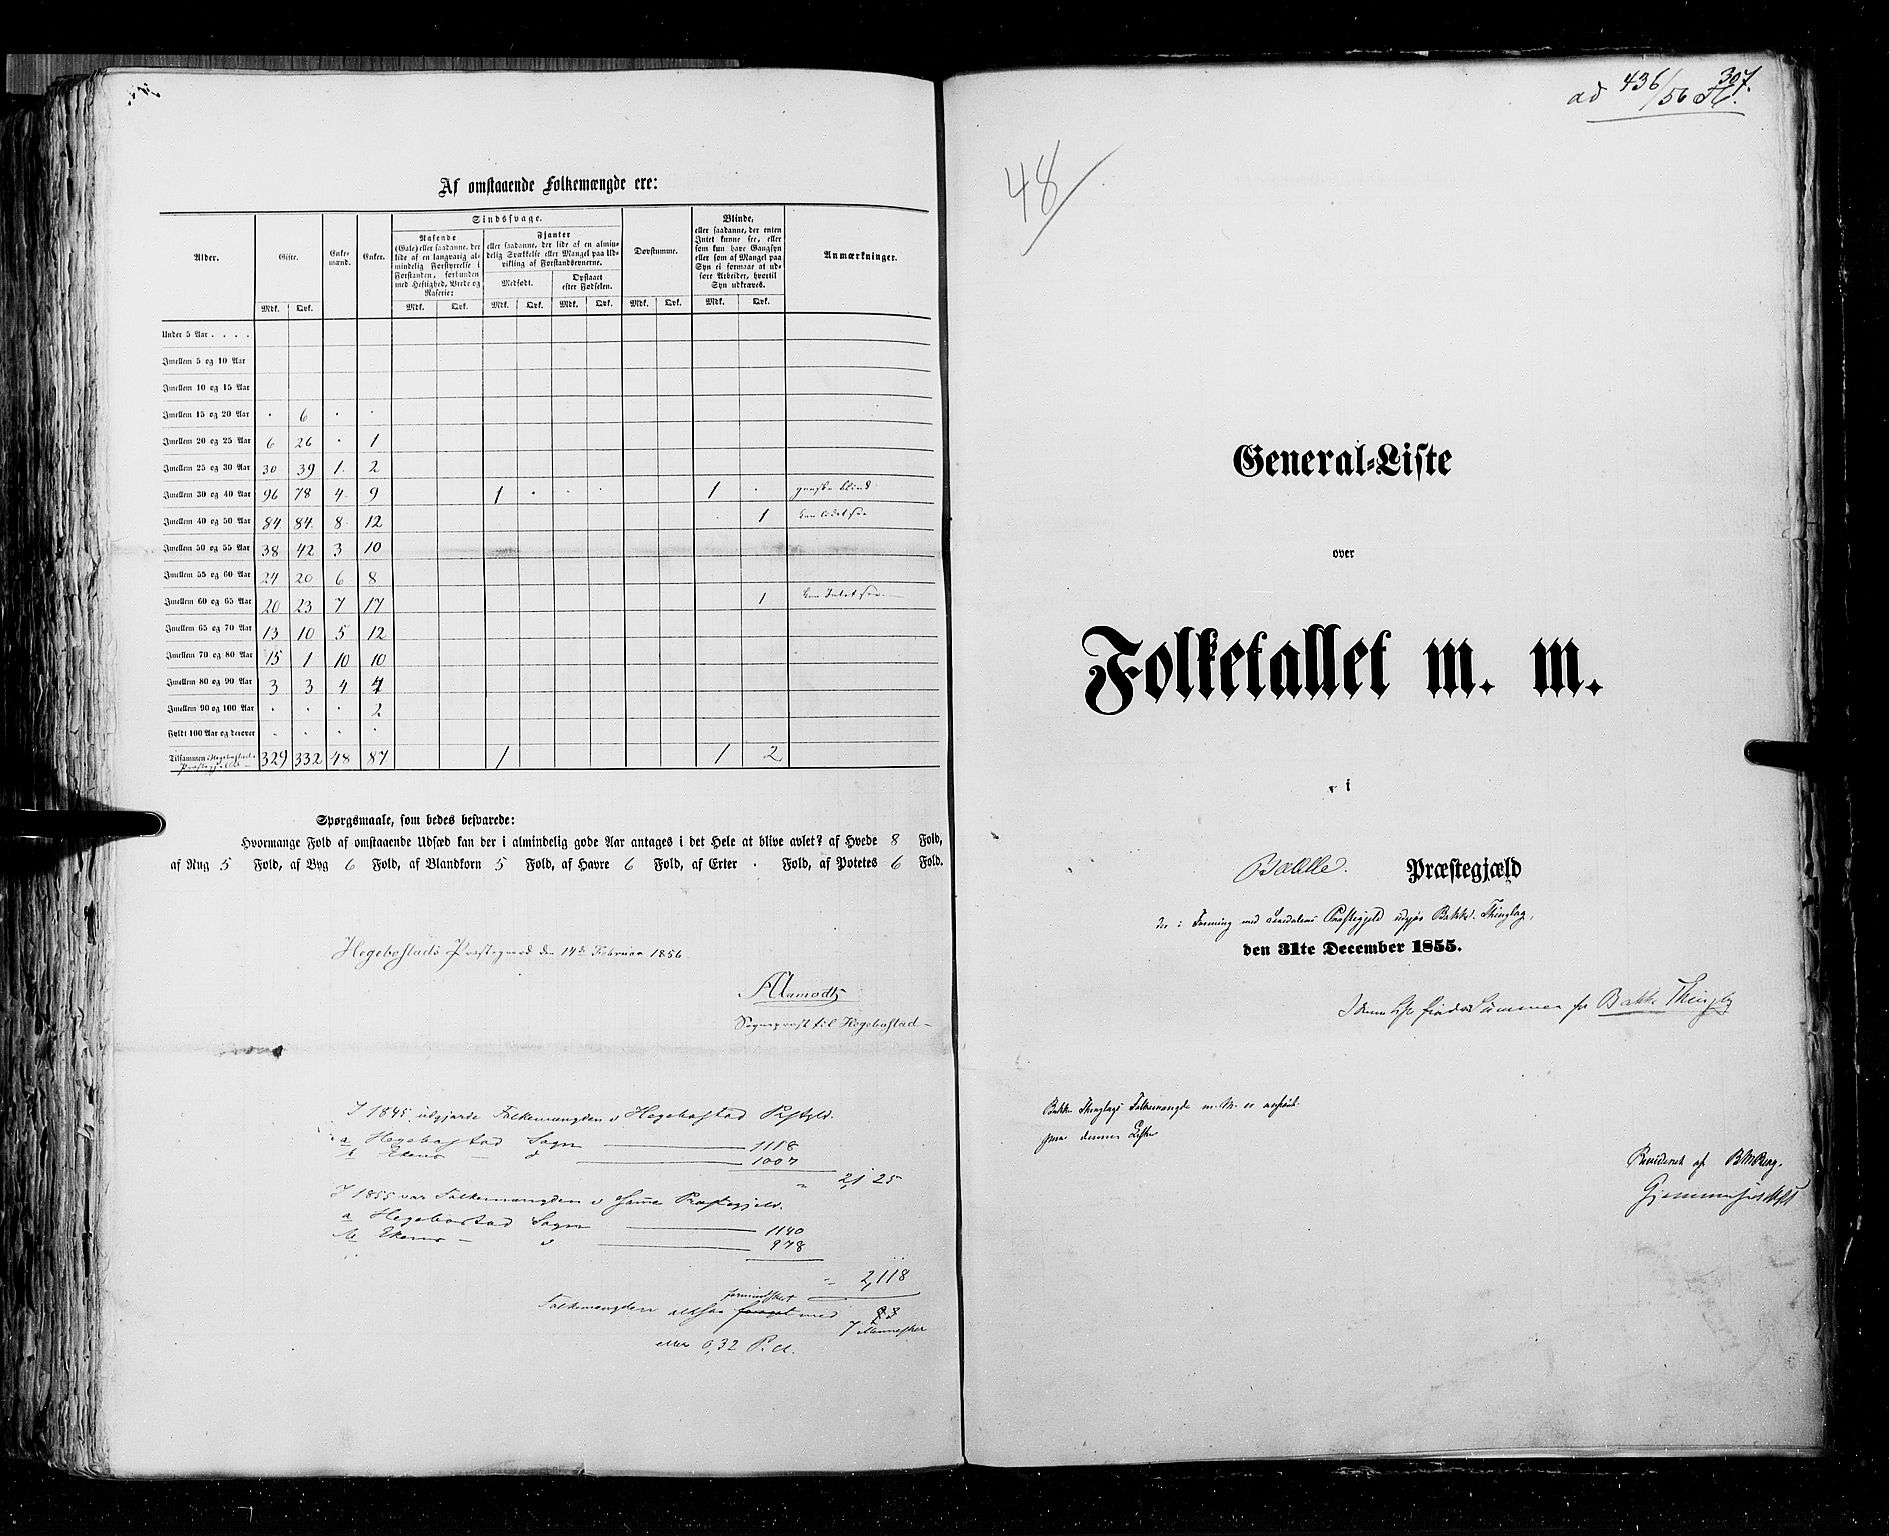 RA, Folketellingen 1855, bind 3: Bratsberg amt, Nedenes amt og Lister og Mandal amt, 1855, s. 307